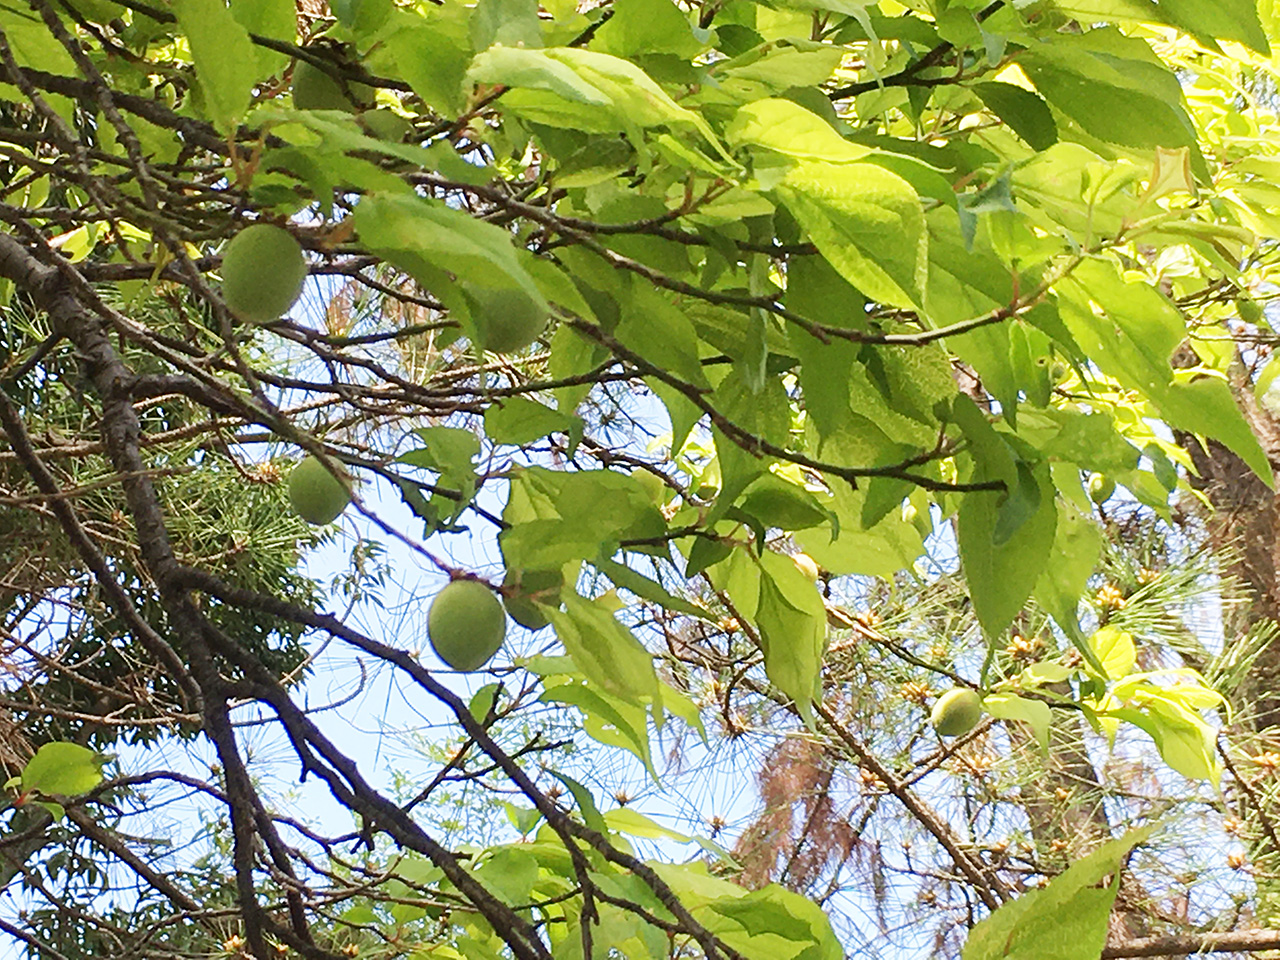 多摩市 多摩市内で小さな梅の実がつき始めております 号外net 多摩市 稲城市